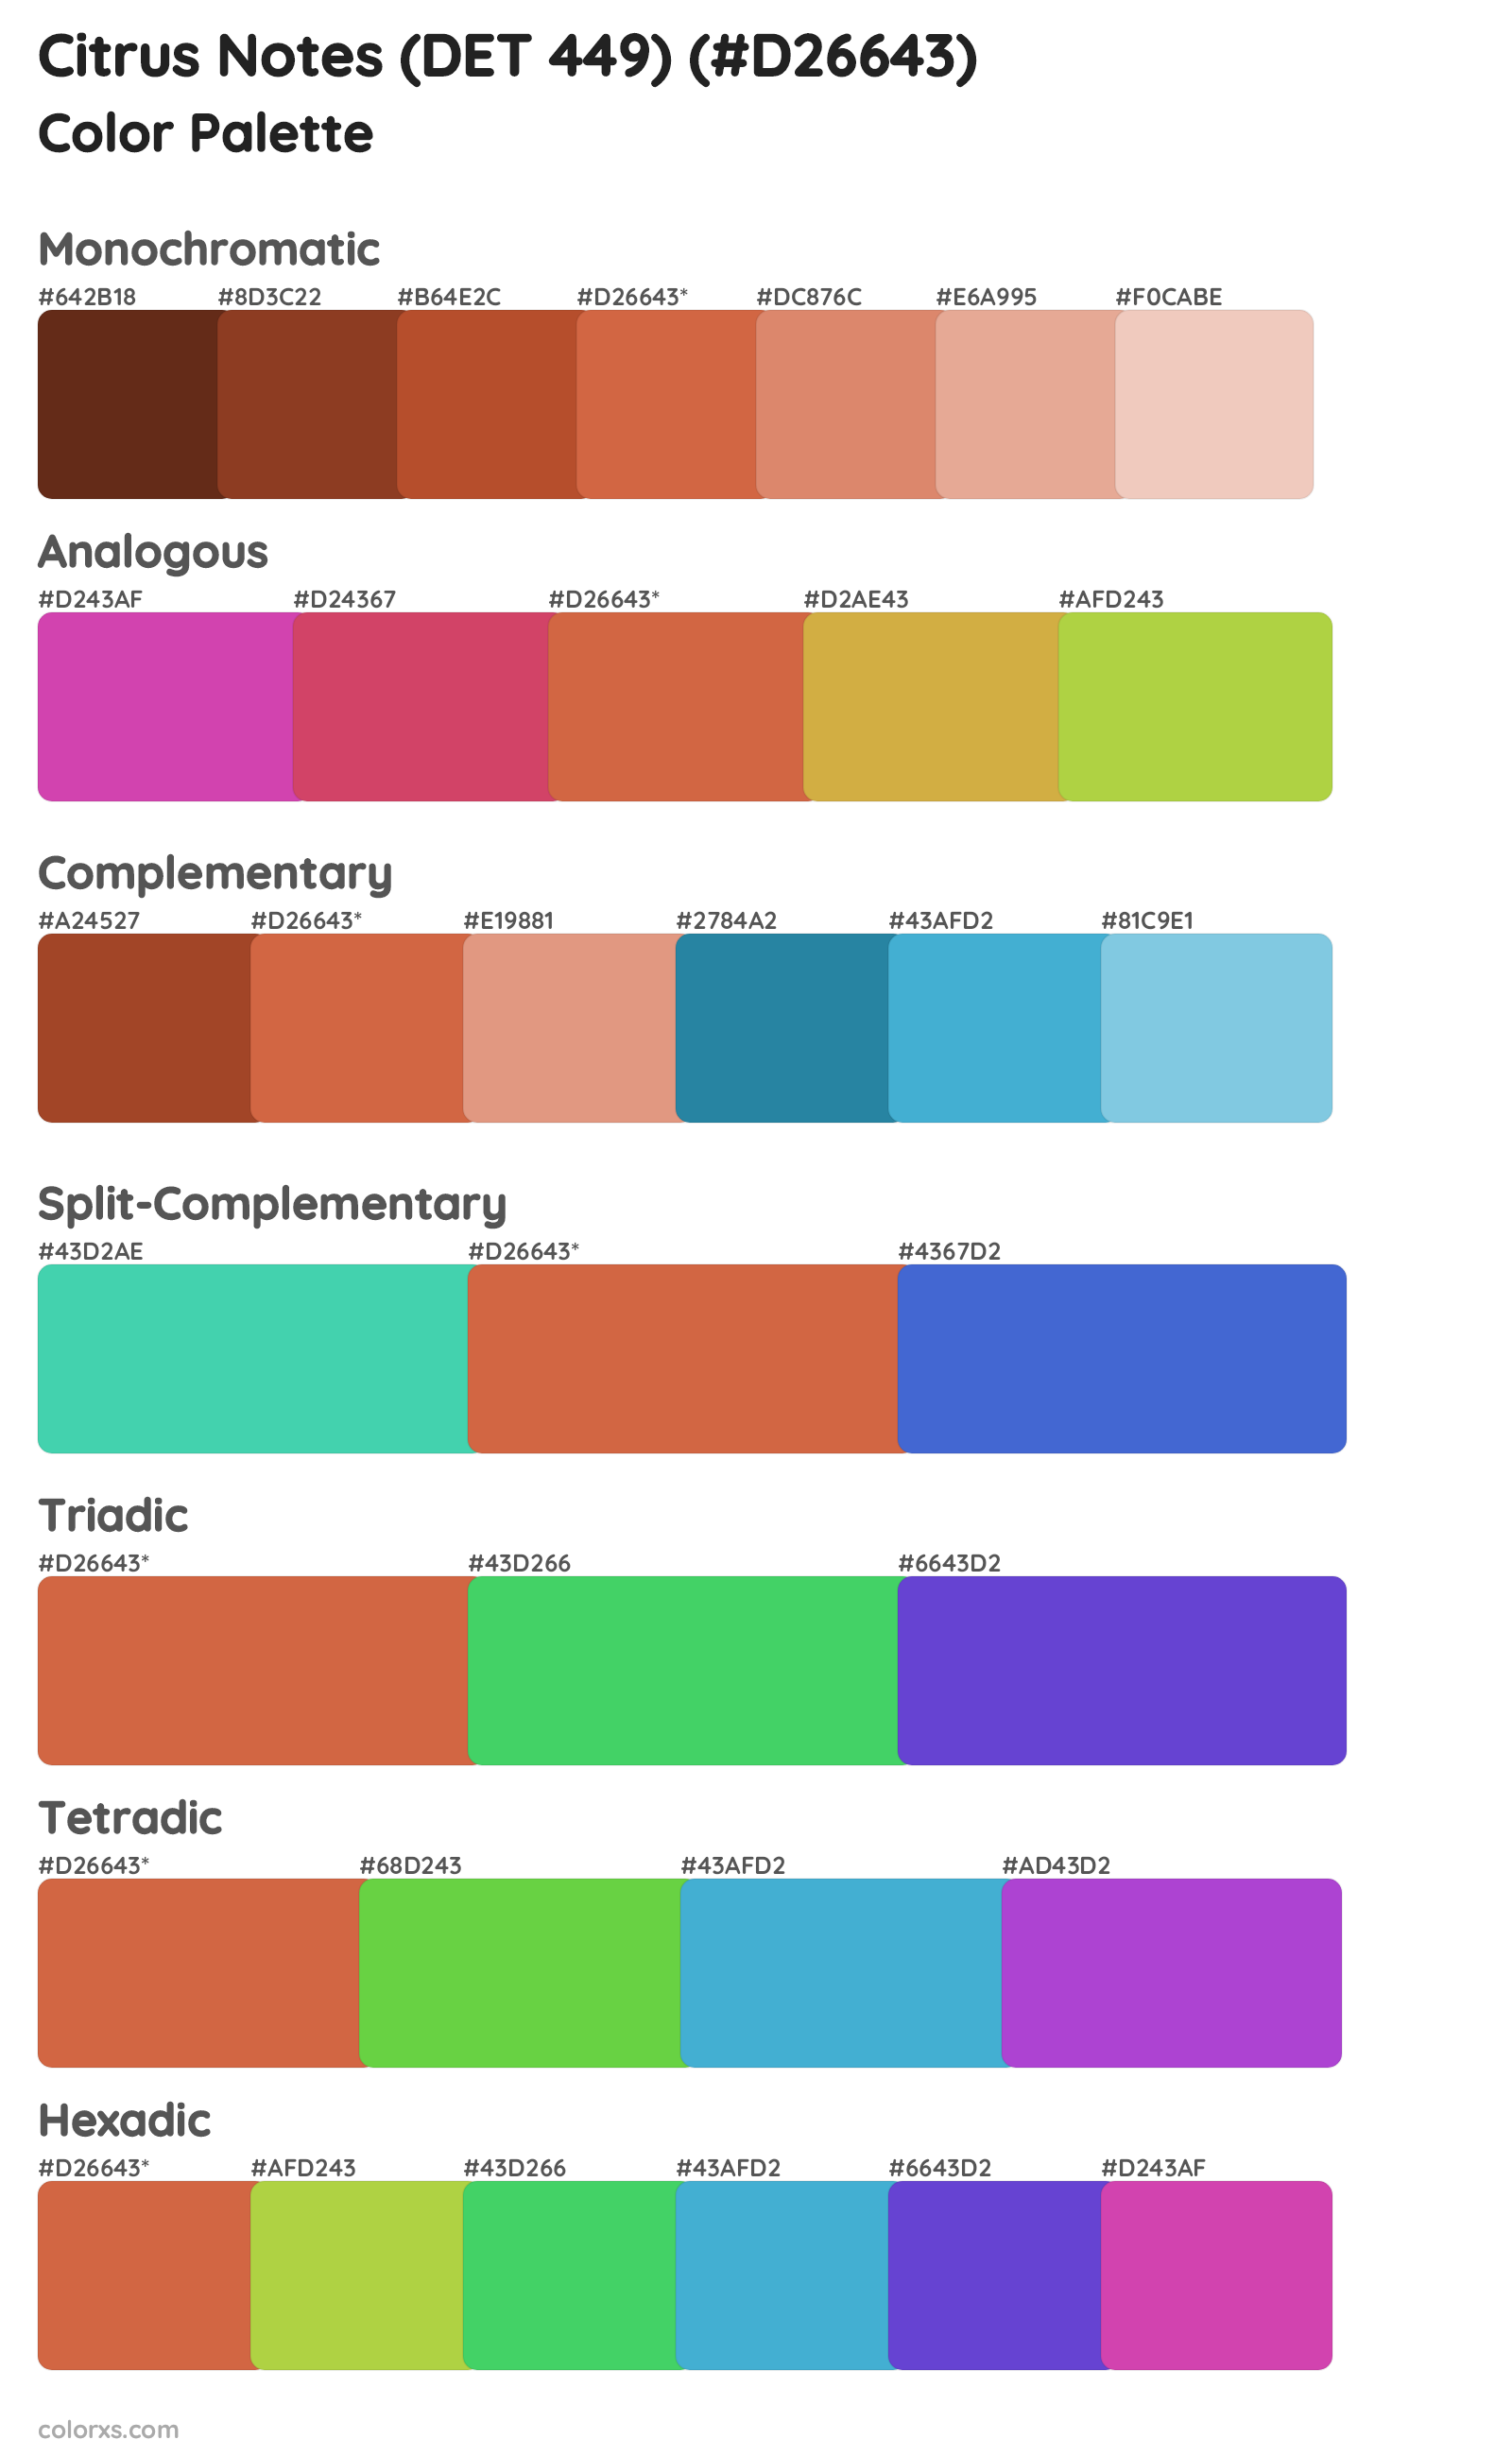 Citrus Notes (DET 449) Color Scheme Palettes